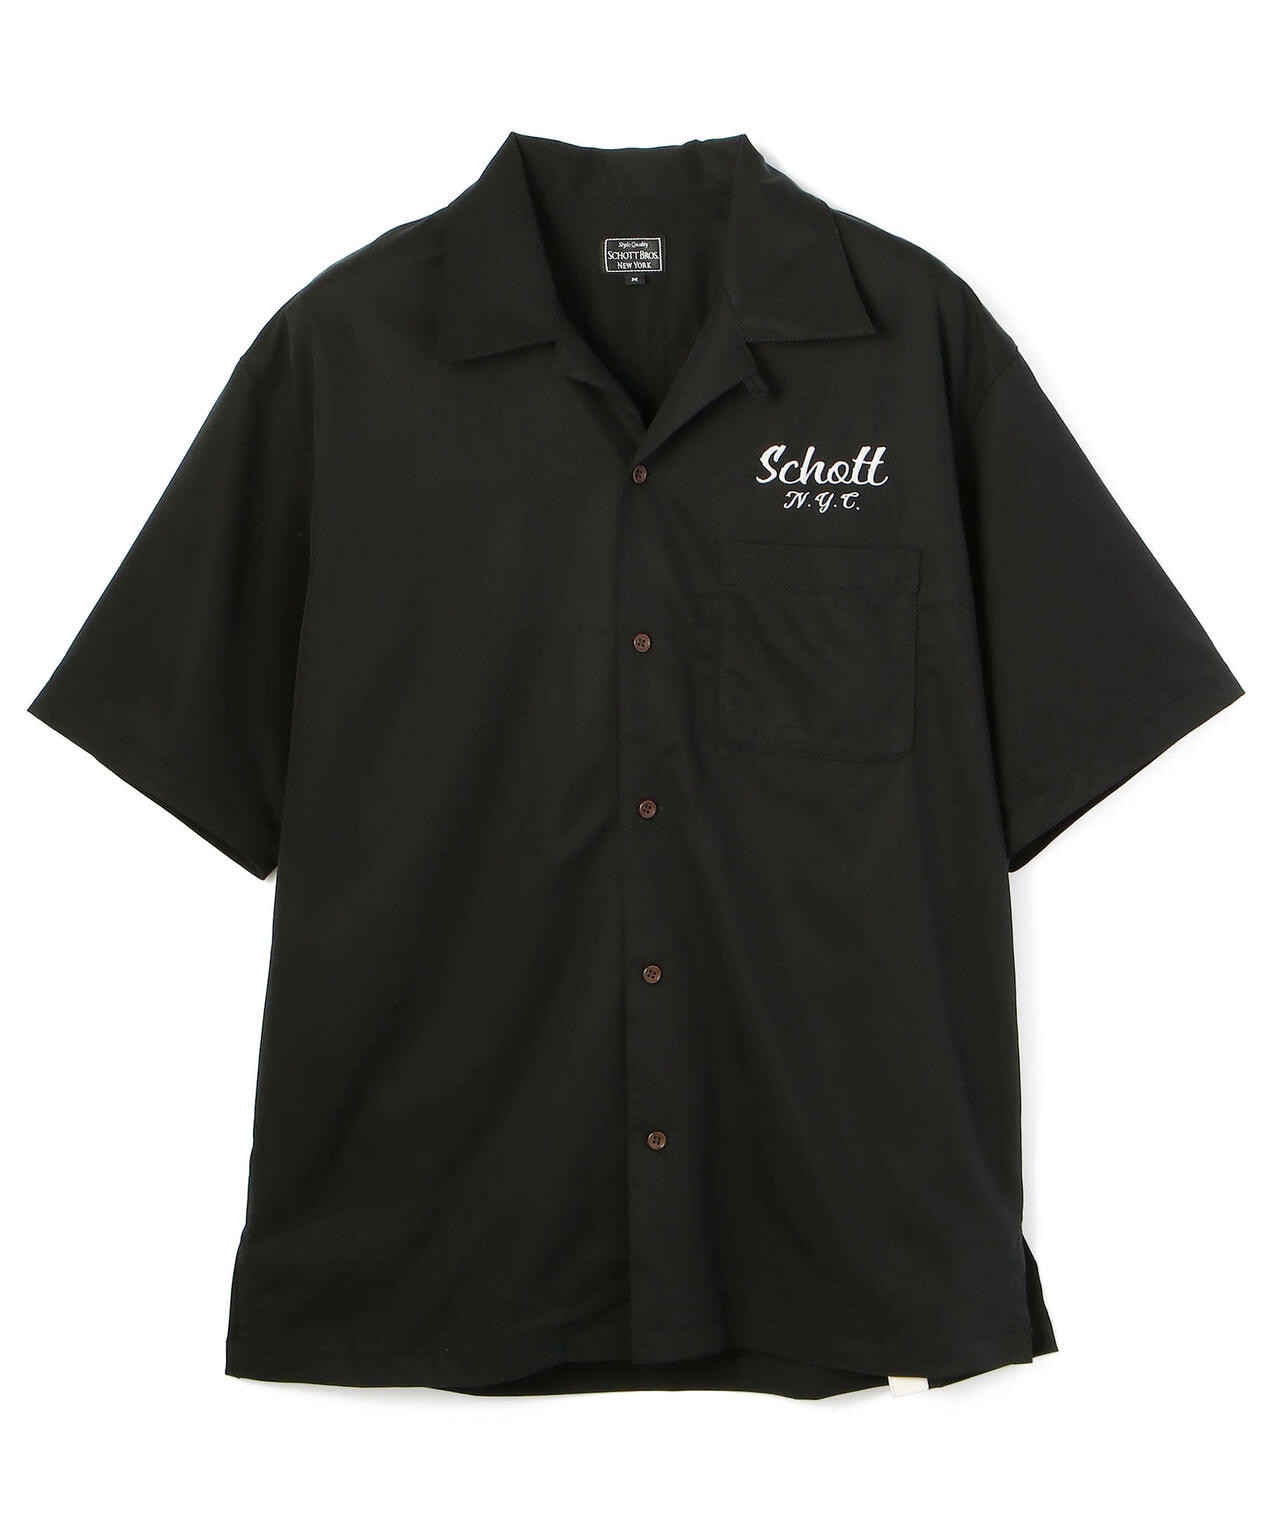 希少 SCHOTT ショット 刺繍 半袖 ボーリングシャツ 黒 Lサイズメーカーブランド